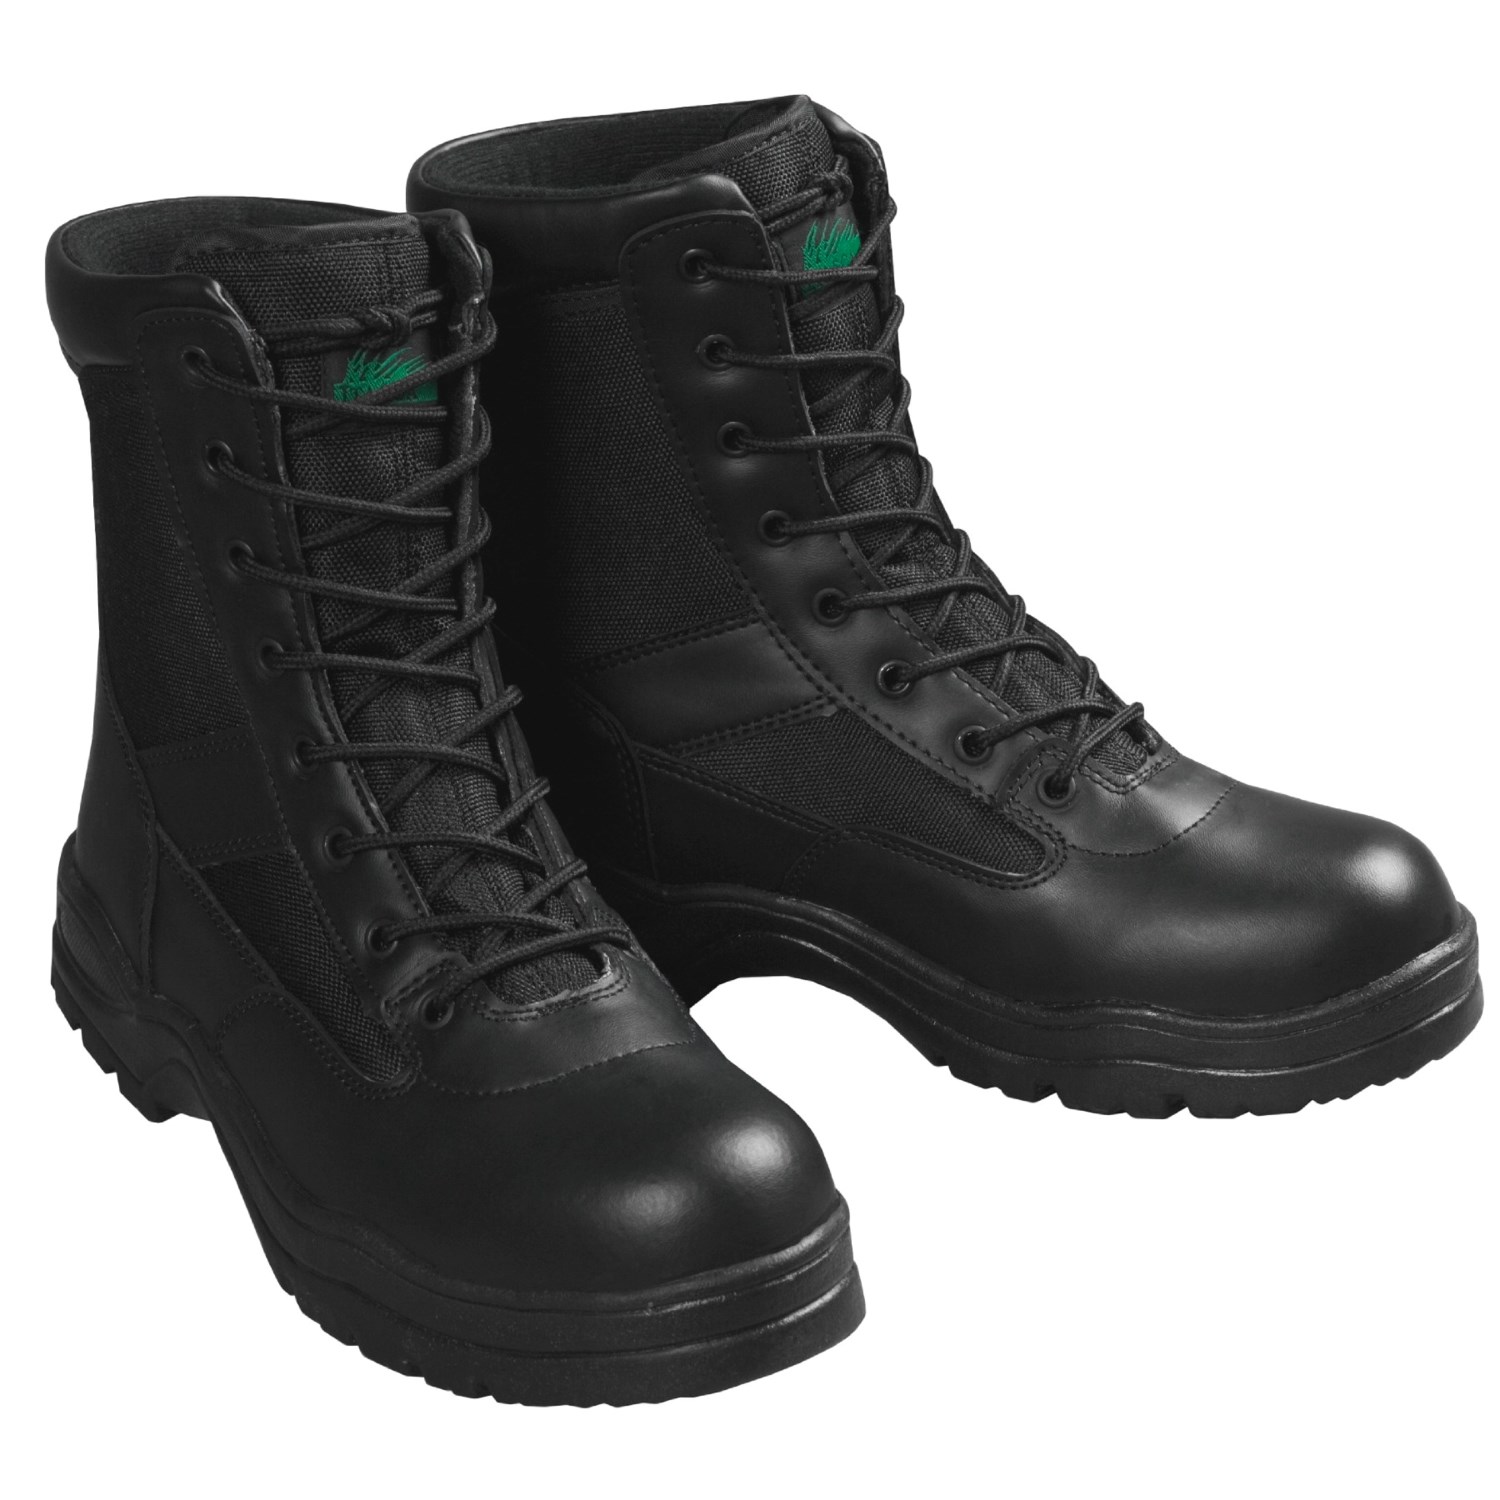 commando boots